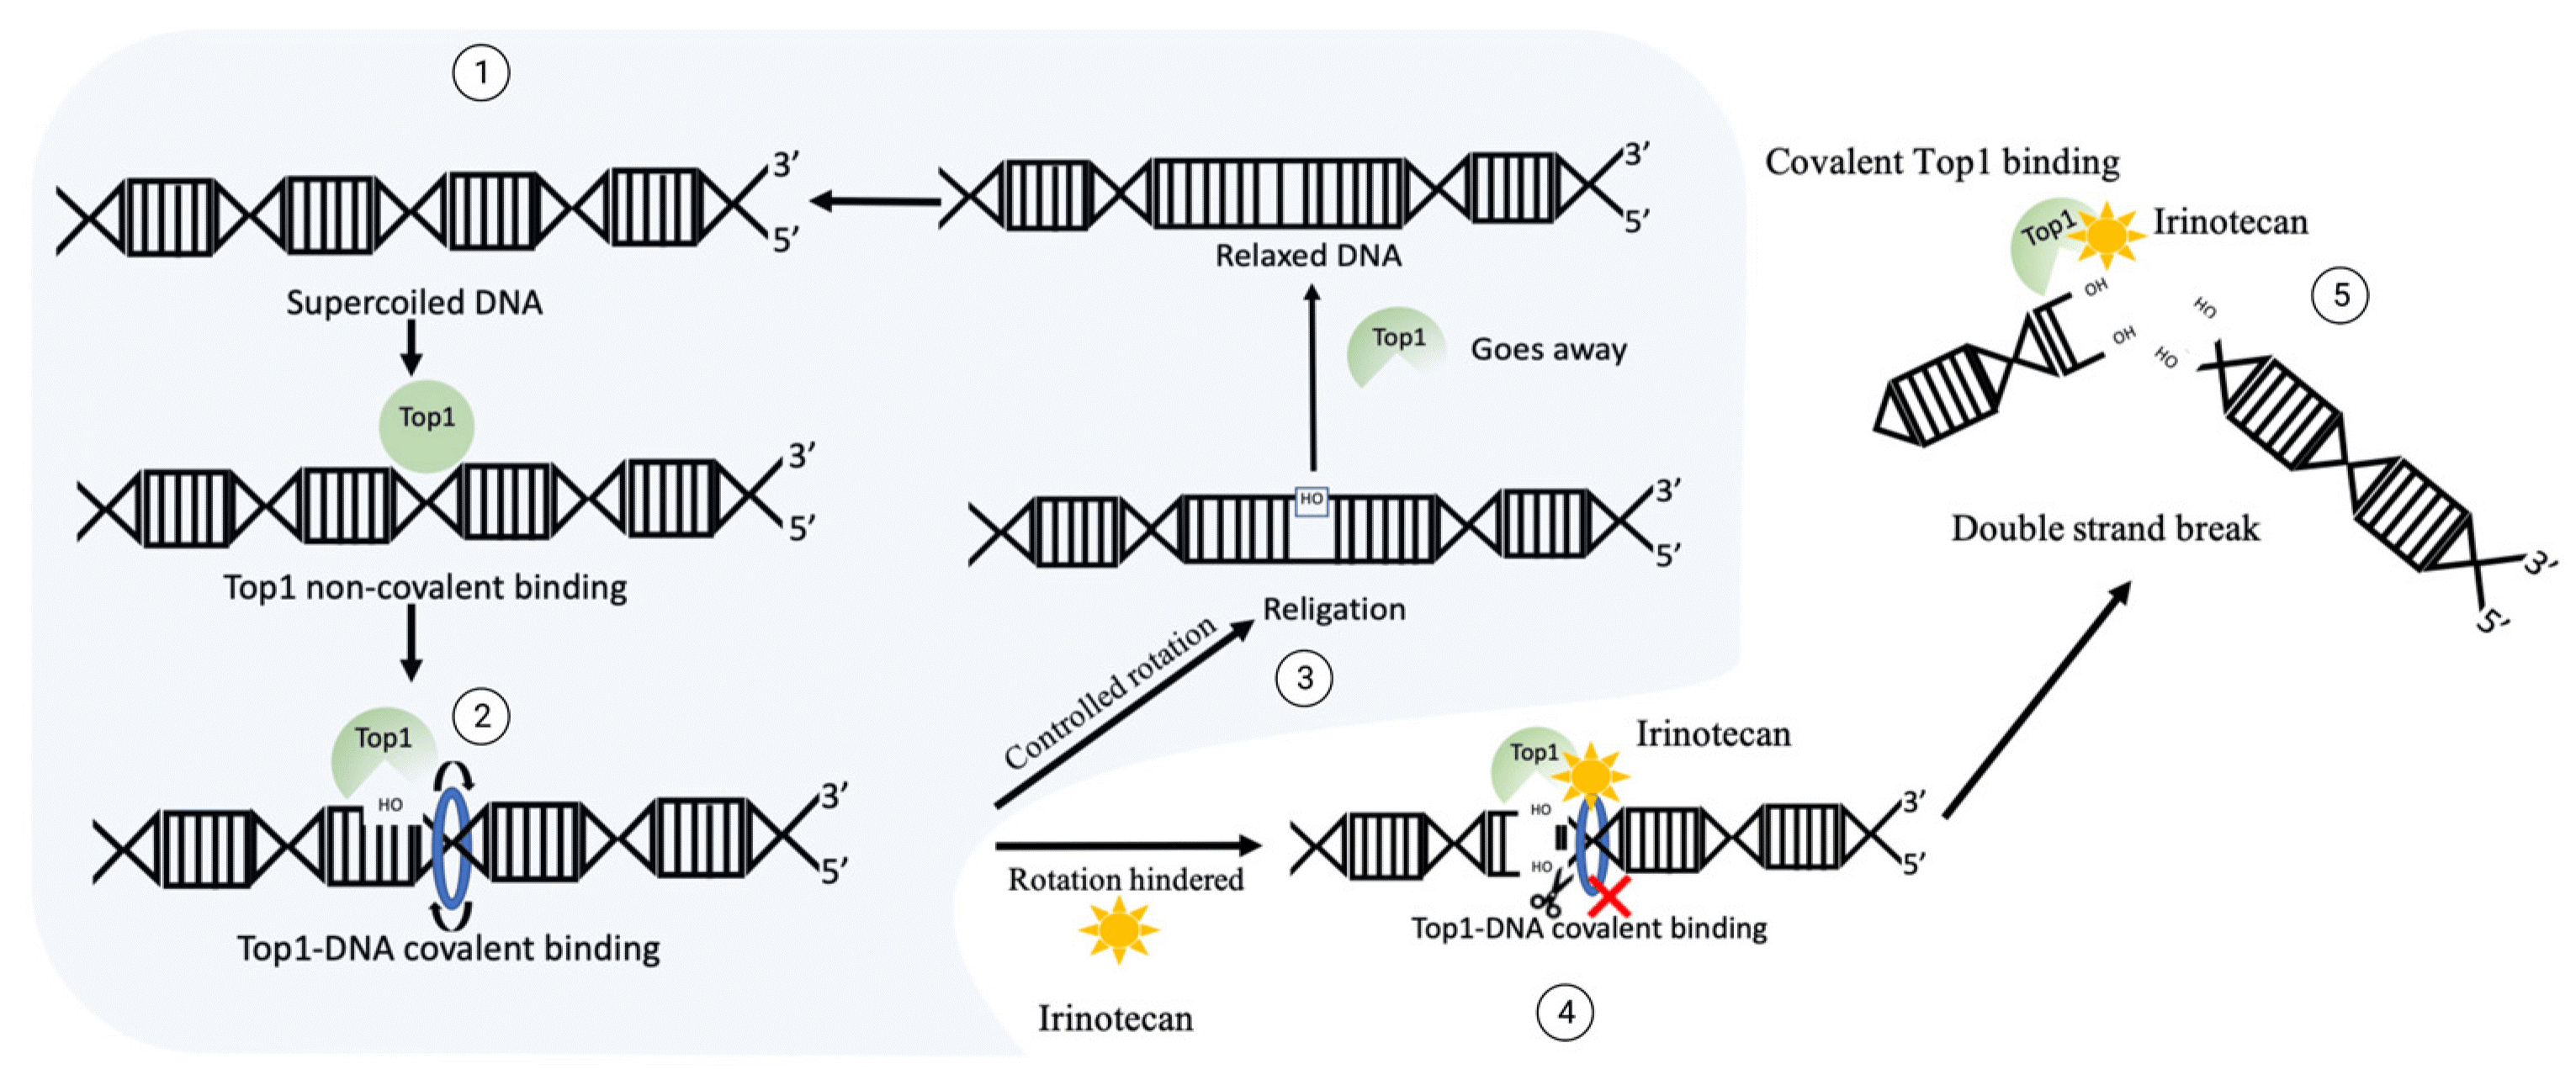 喜树碱类毒素CPT-11暴露情况下DNA断裂机制